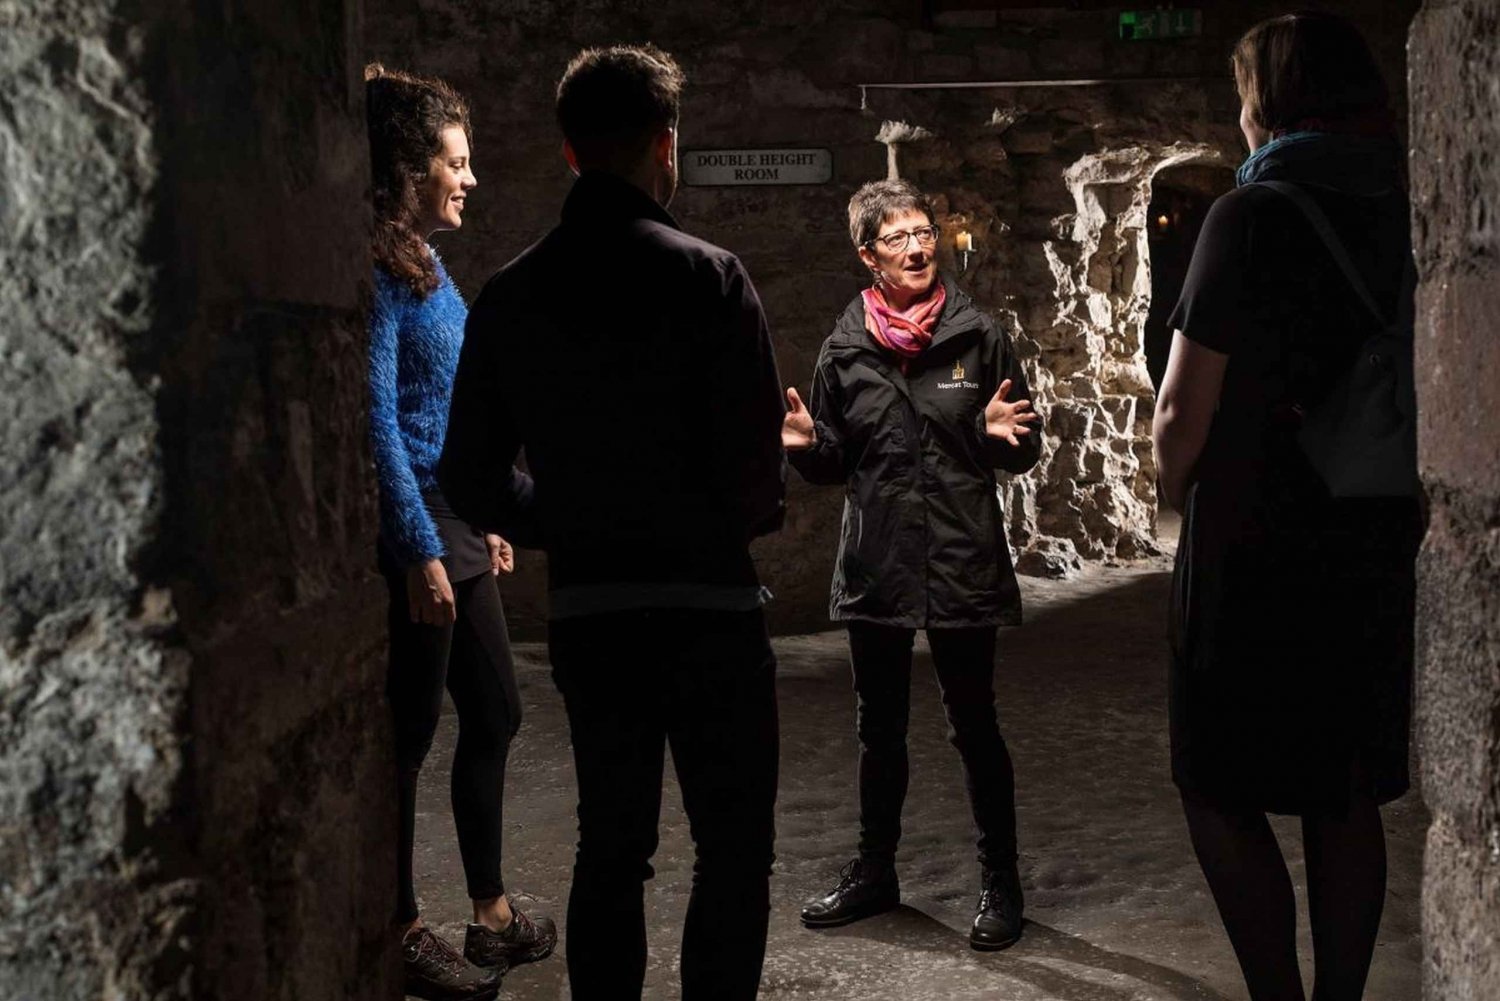 Edinburgh: Historiska underjordiska valv, tur under dagtid